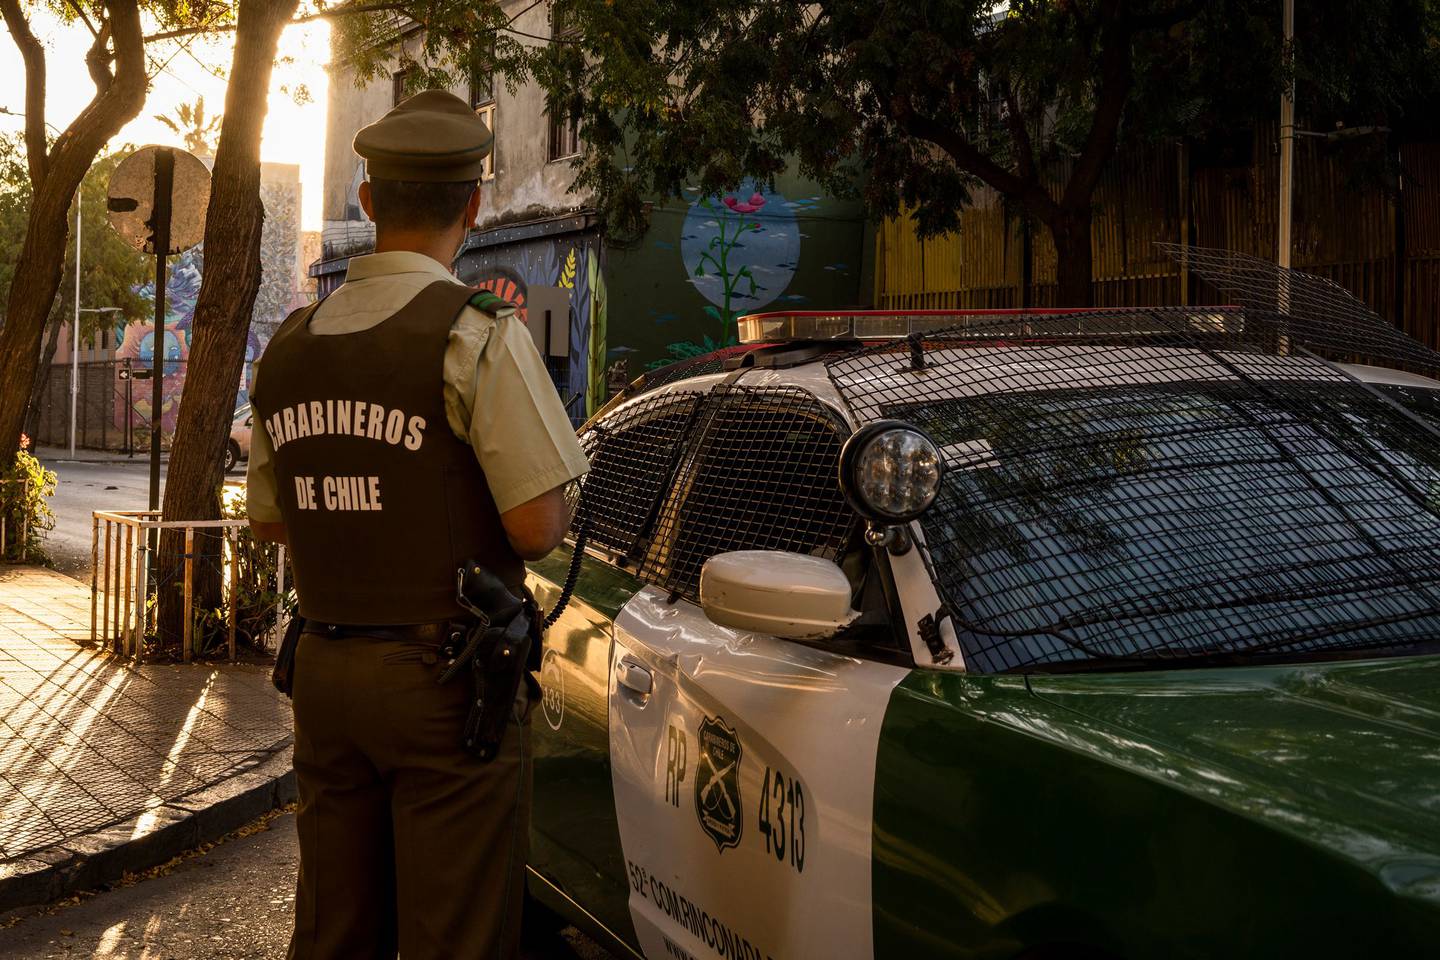 Un oficial de policía resguarda en el bario Yungay de Santiago de Chile. Fotógrafa: Tamara Merino/Bloomberg